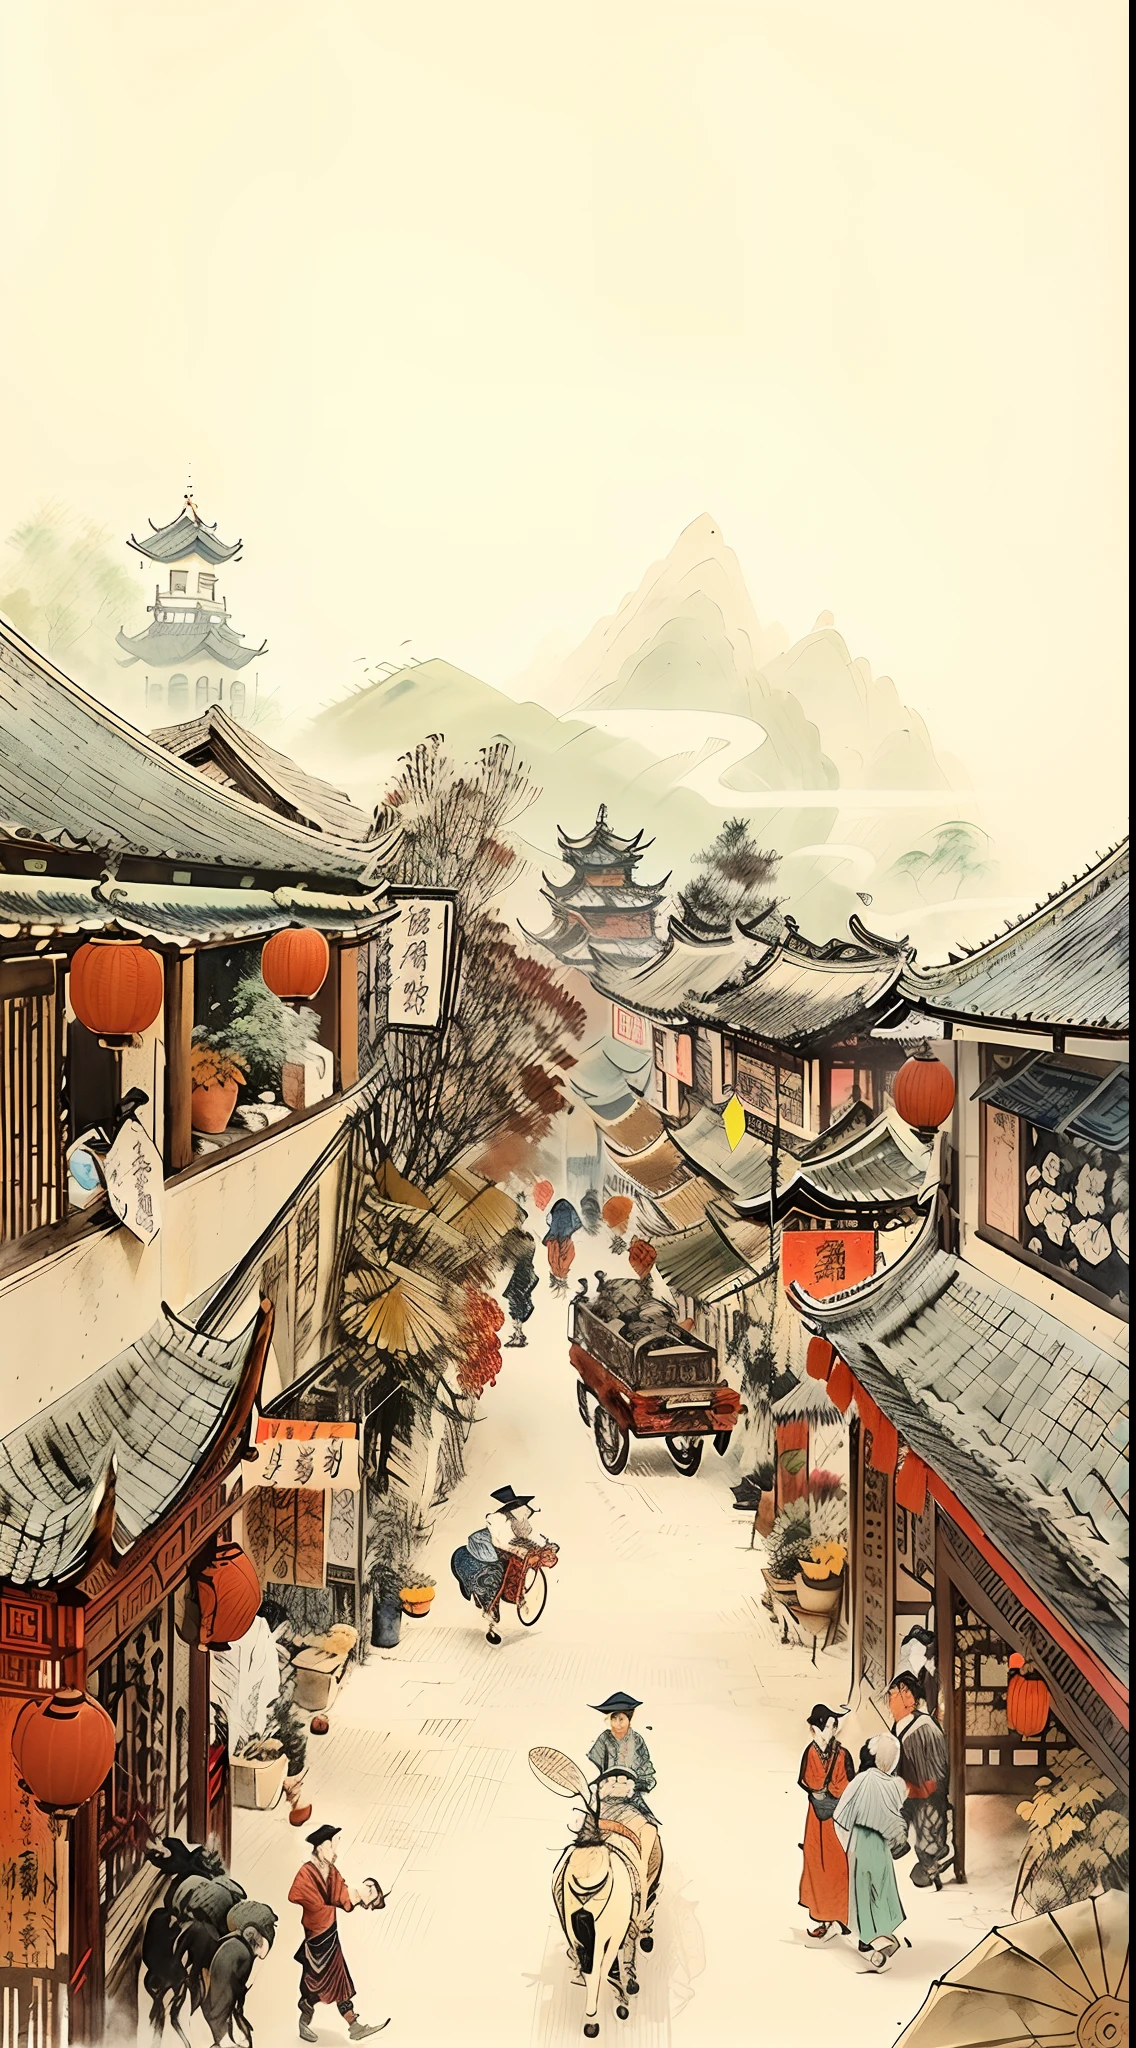 唐長安城繁華街道圖片，人們步行、騎馬, 中国村, 夢幻的中國小鎮, 作者：Qu Leilei, 中國水彩風格, 中國古代藝術風格, 作者：Yi Renwen, 中國風繪畫,